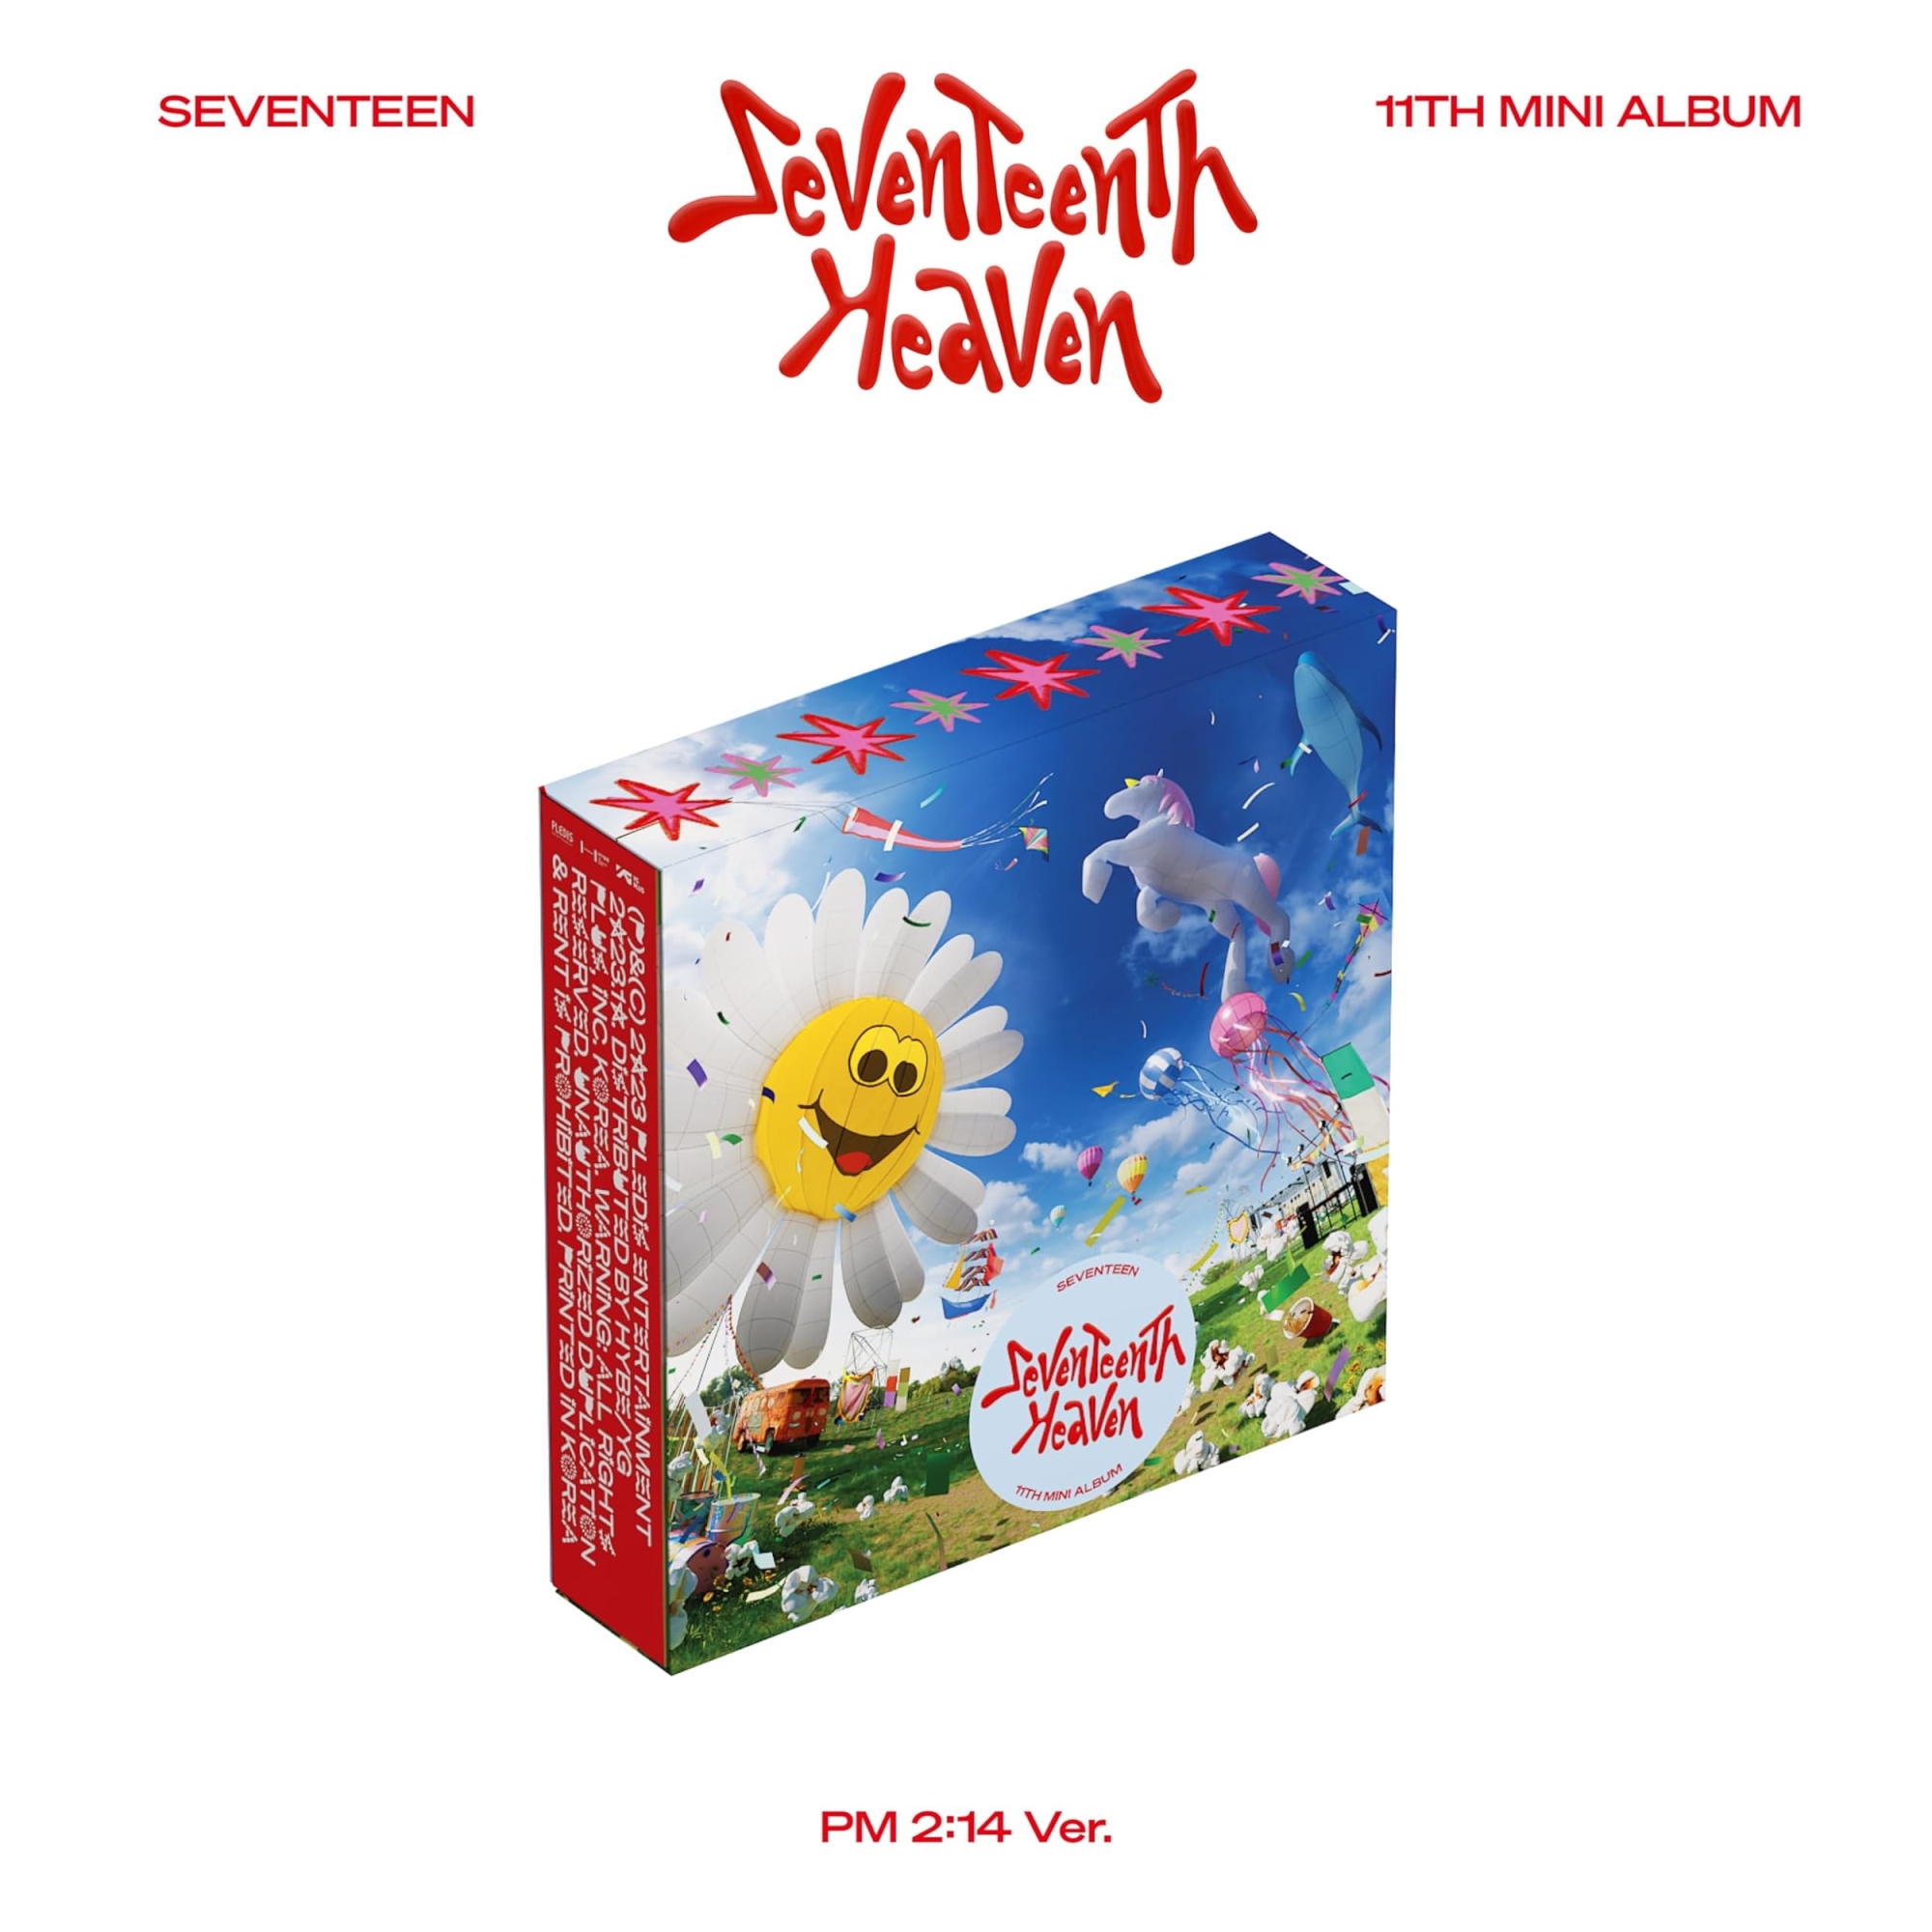 Audio Cd Seventeen - 11Th Mini Album 'Seventeenth Heaven' Pm 2:14 Ver. NUOVO SIGILLATO, EDIZIONE DEL 27/10/2023 SUBITO DISPONIBILE